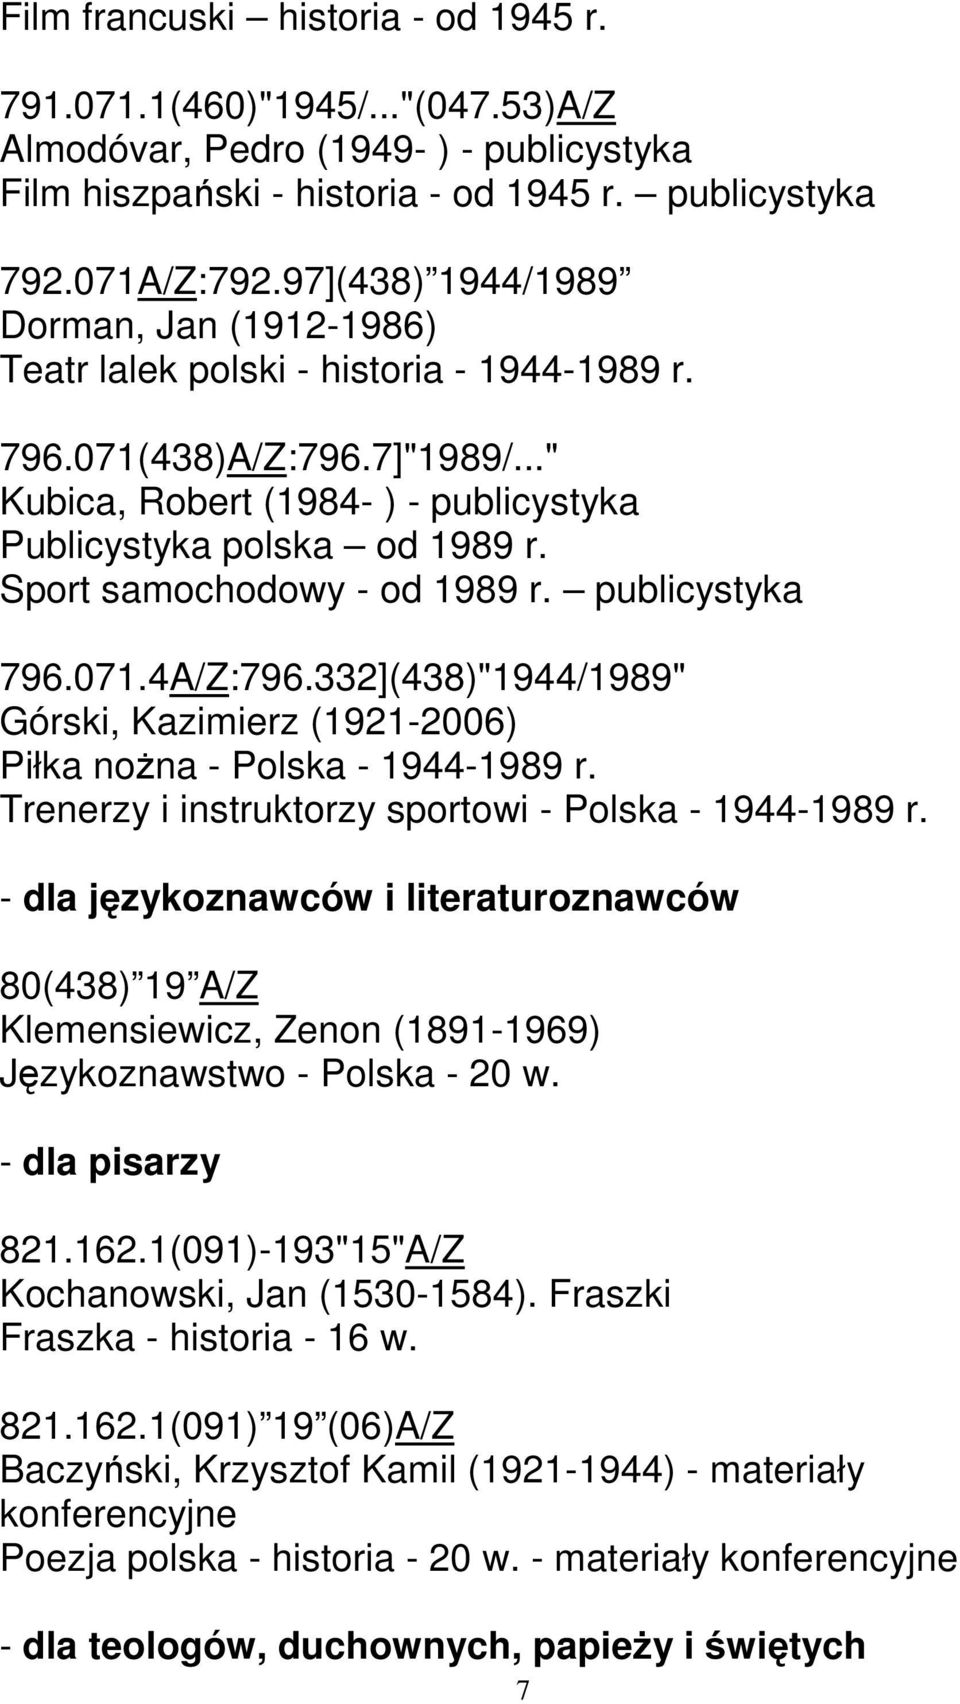 Sport samochodowy - od 1989 r. publicystyka 796.071.4A/Z:796.332](438)"1944/1989" Górski, Kazimierz (1921-2006) Piłka nożna - Polska - 1944-1989 r.